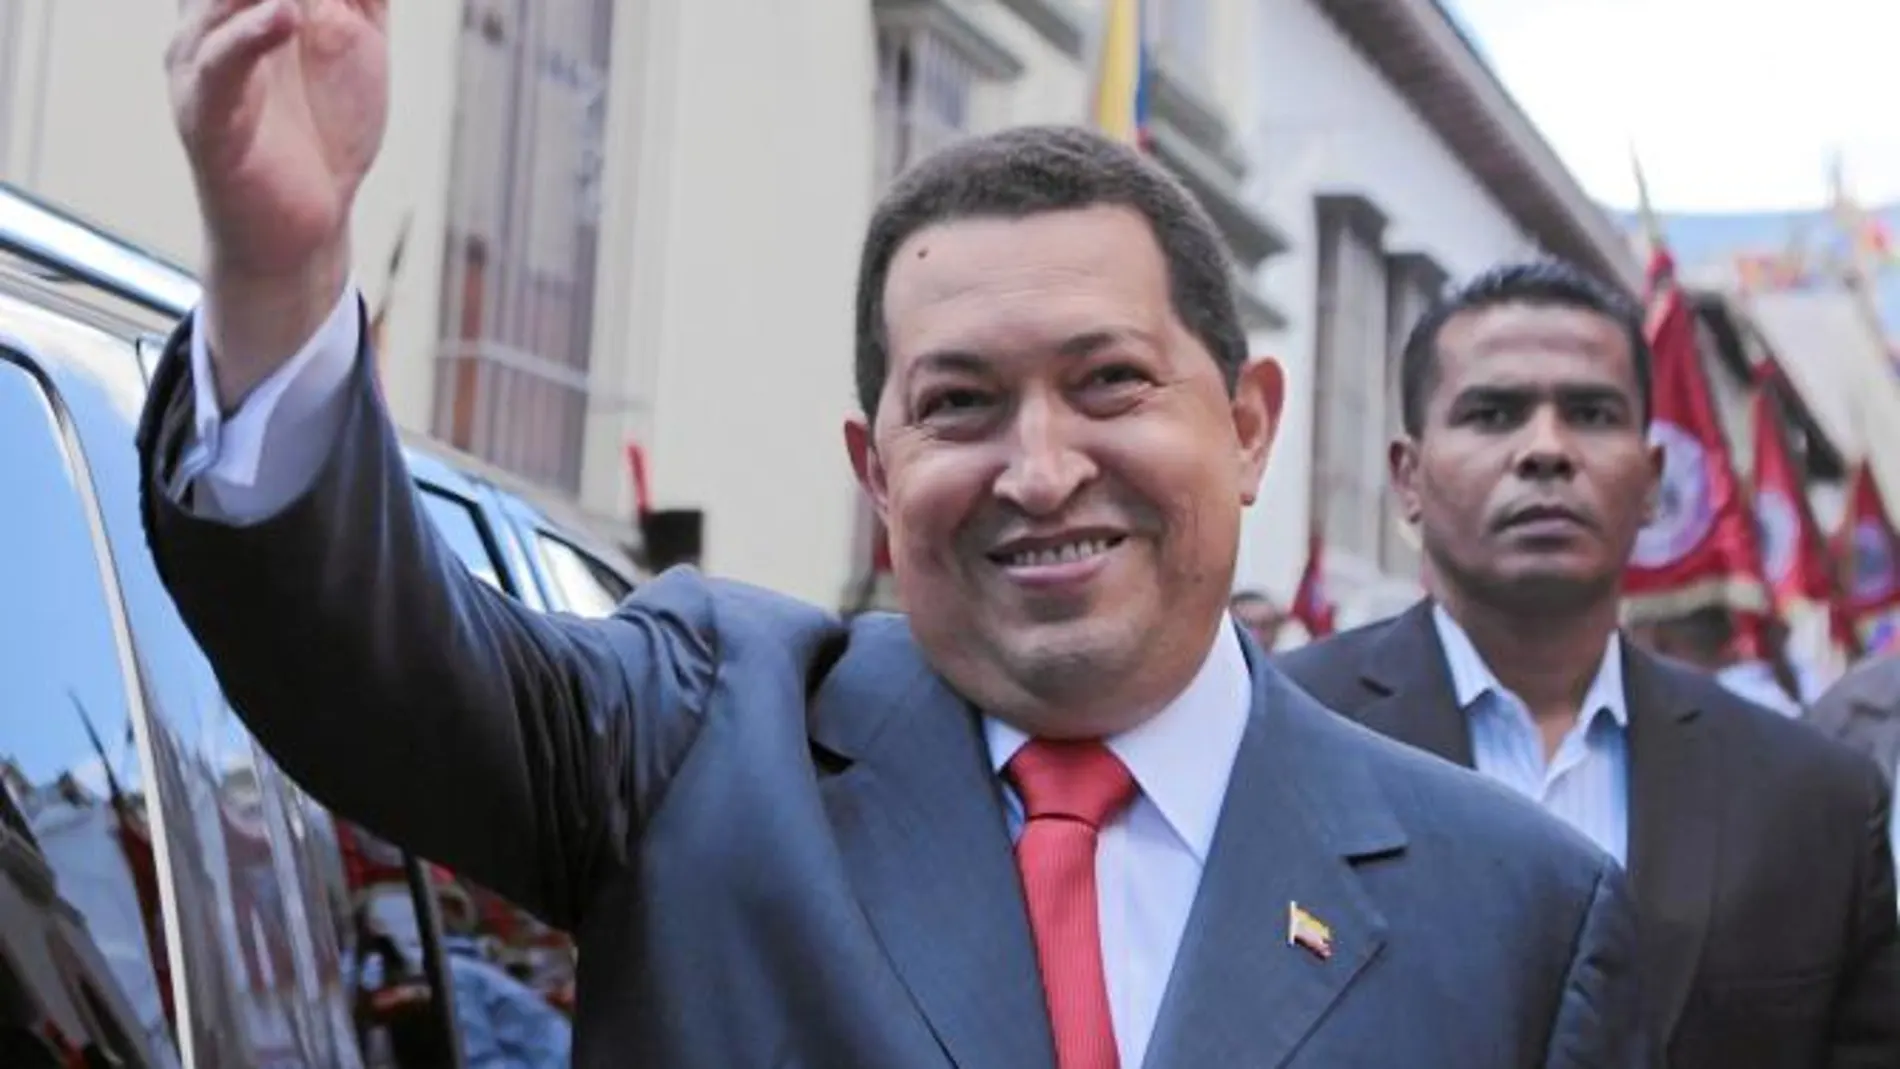 El presidente venezolano, Hugo Chávez, saluda a sus seguidores a su regreso a Caracas tras someterse a sesiones de quimioterapia en Cuba